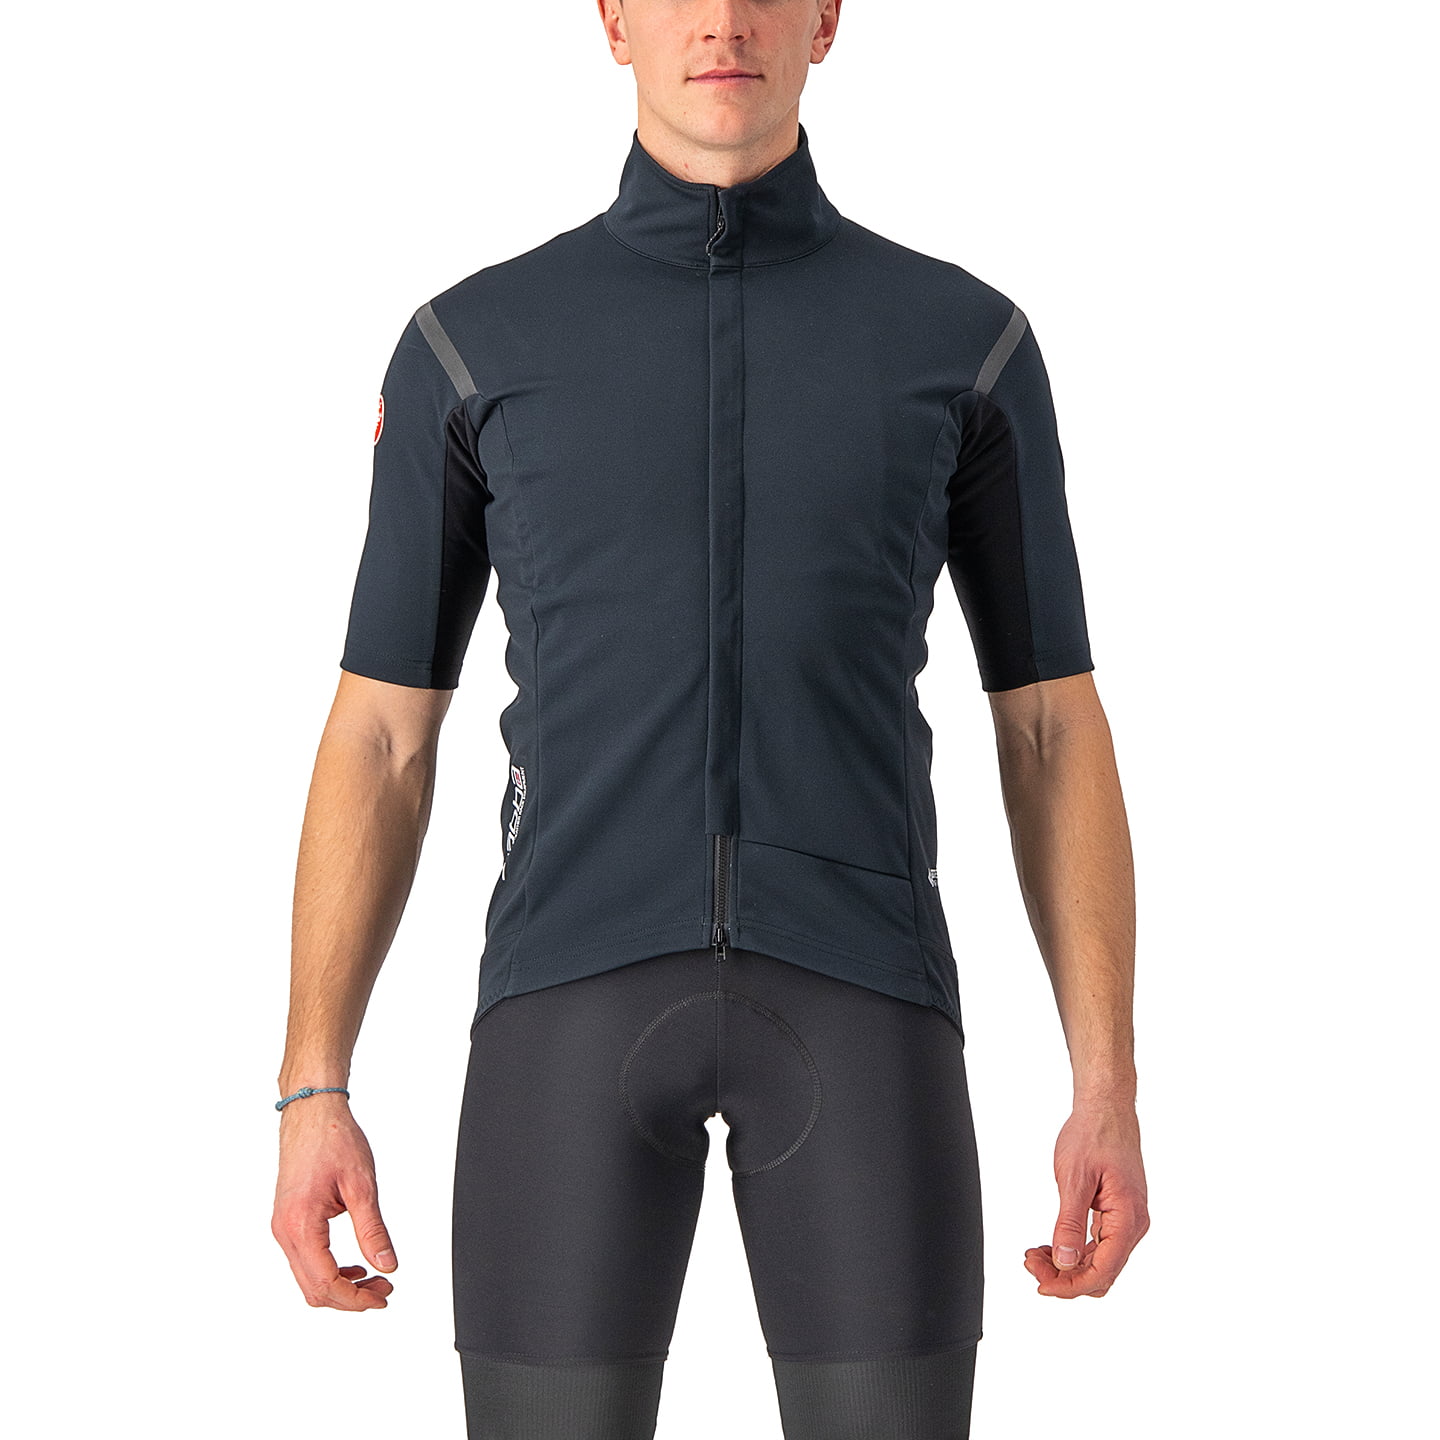 CASTELLI Gabba RoS 2 Short Sleeve Light Jacket Light Jacket, for men, size M, Bike jacket, Cycling clothing